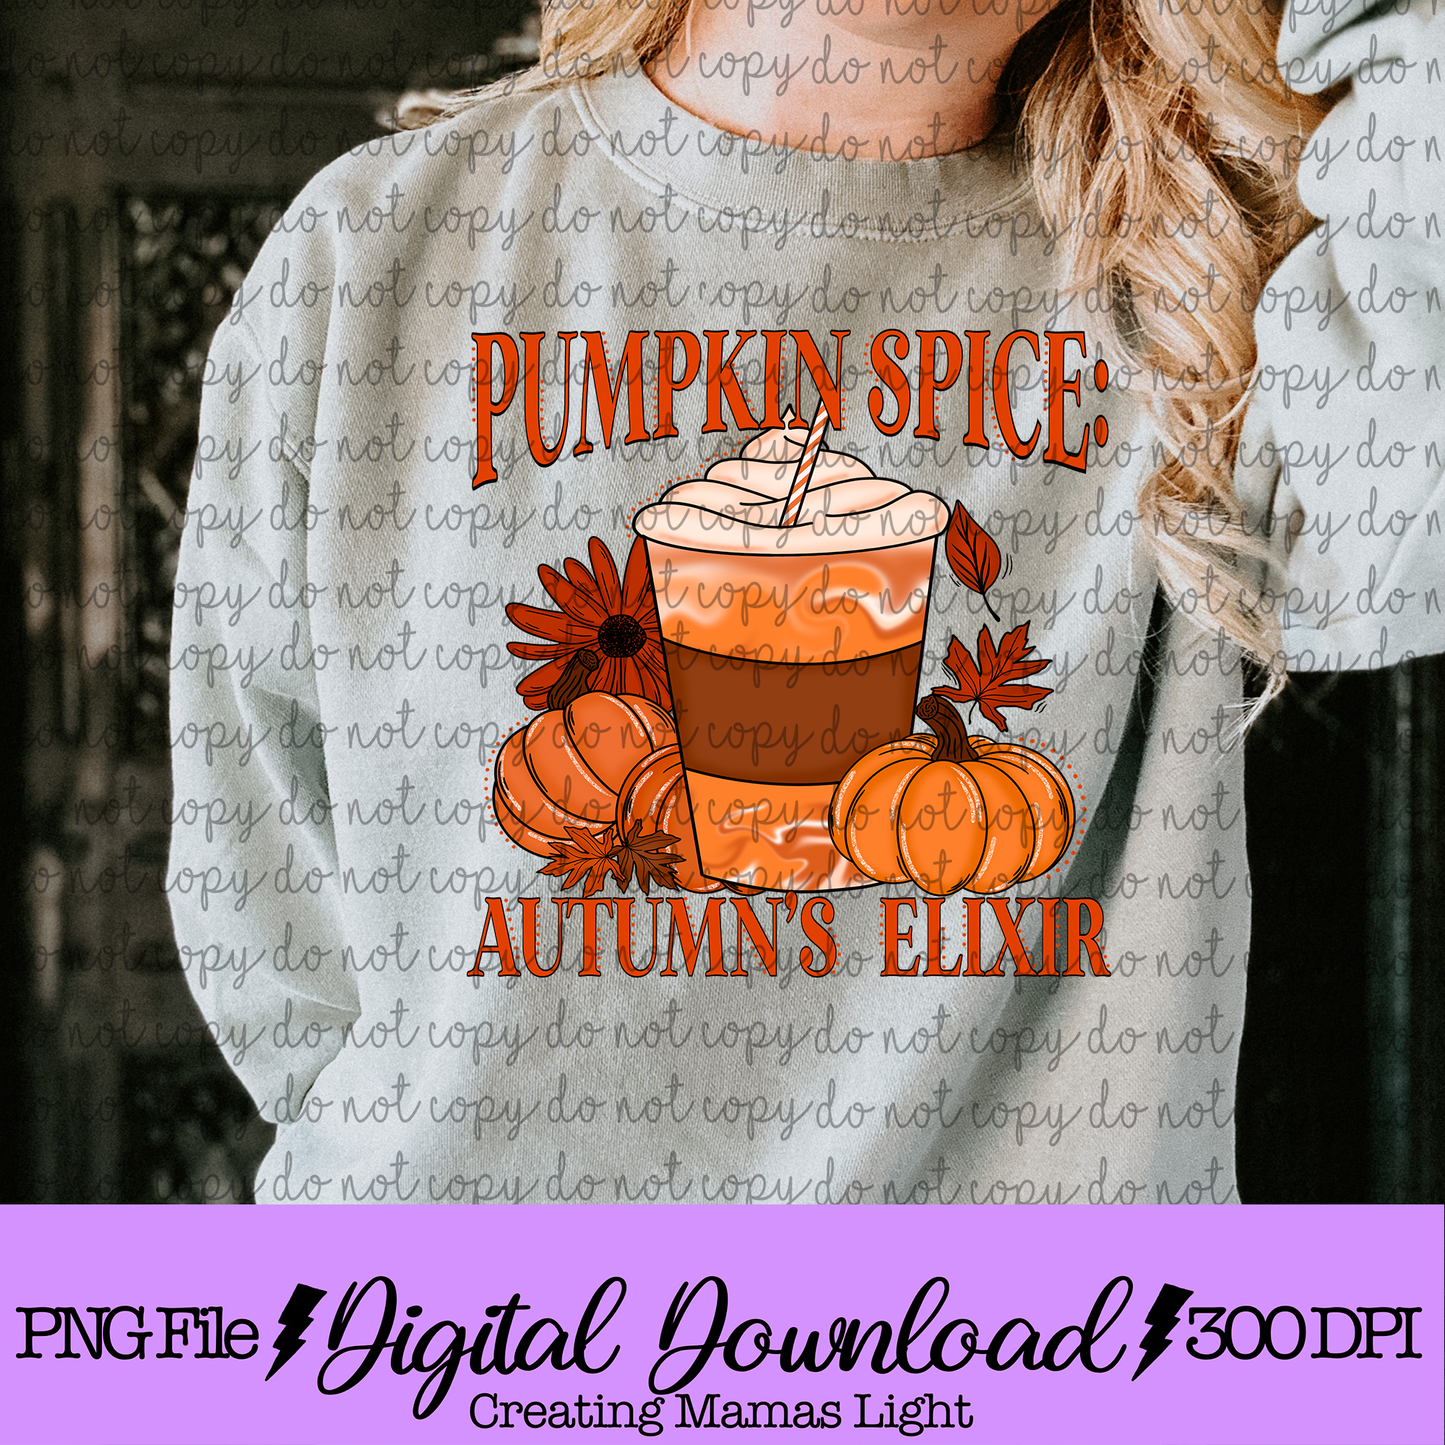 Pumpkin Spice: Autumn's Elixir